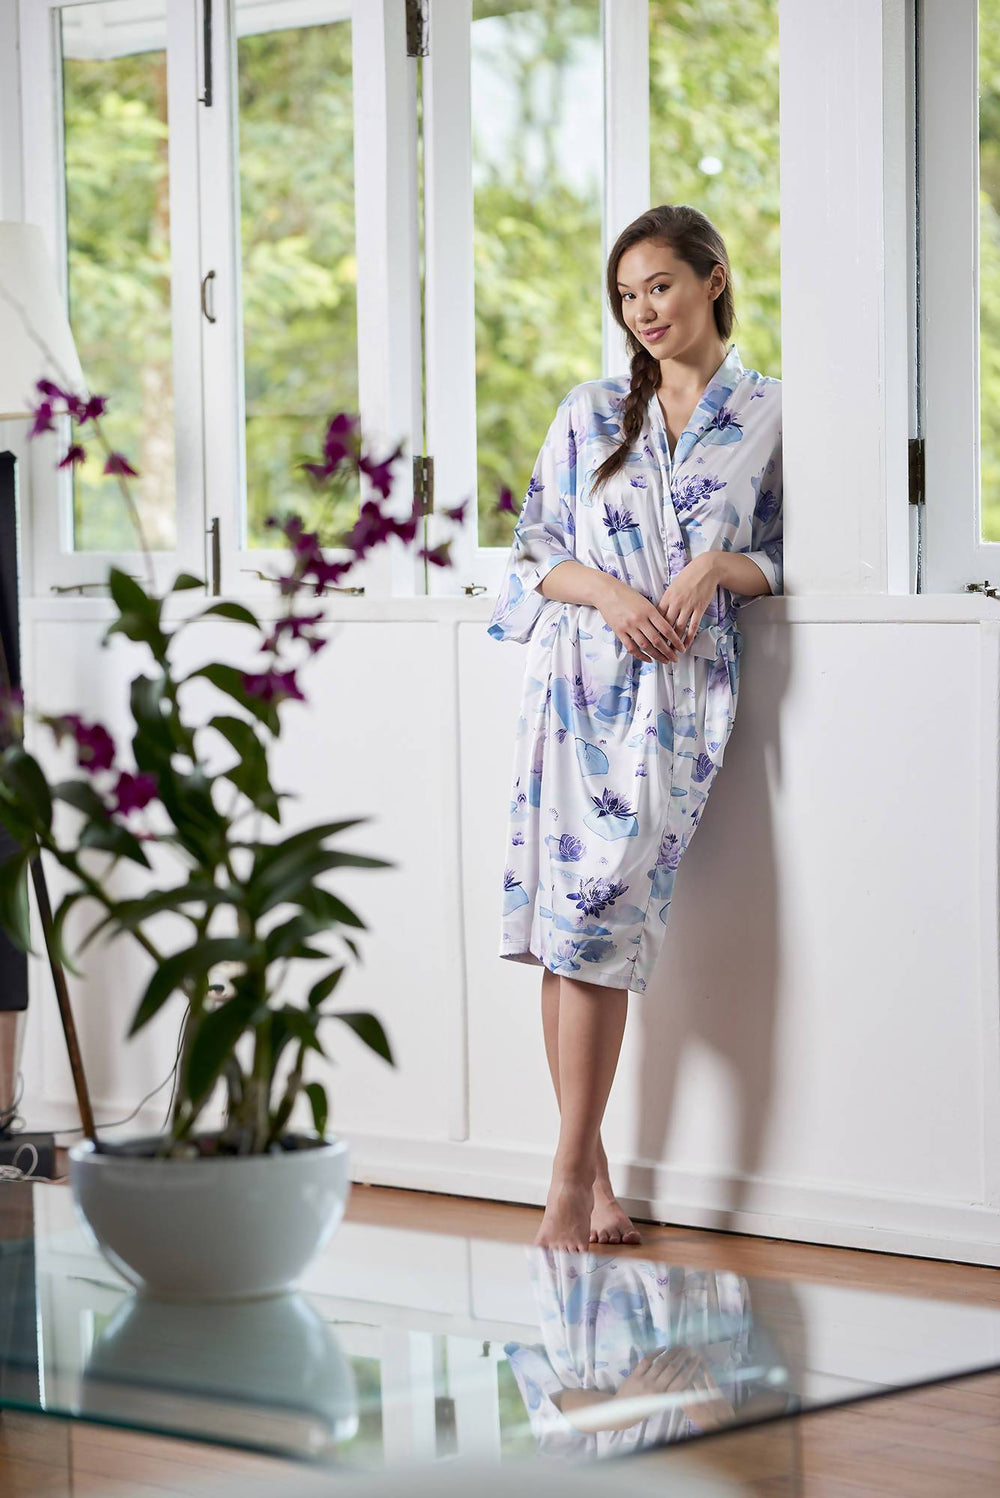 Lotus Flower Kimono Robe (Midi) - Sleepwear for Women - The Mariposa Collection - Naiise